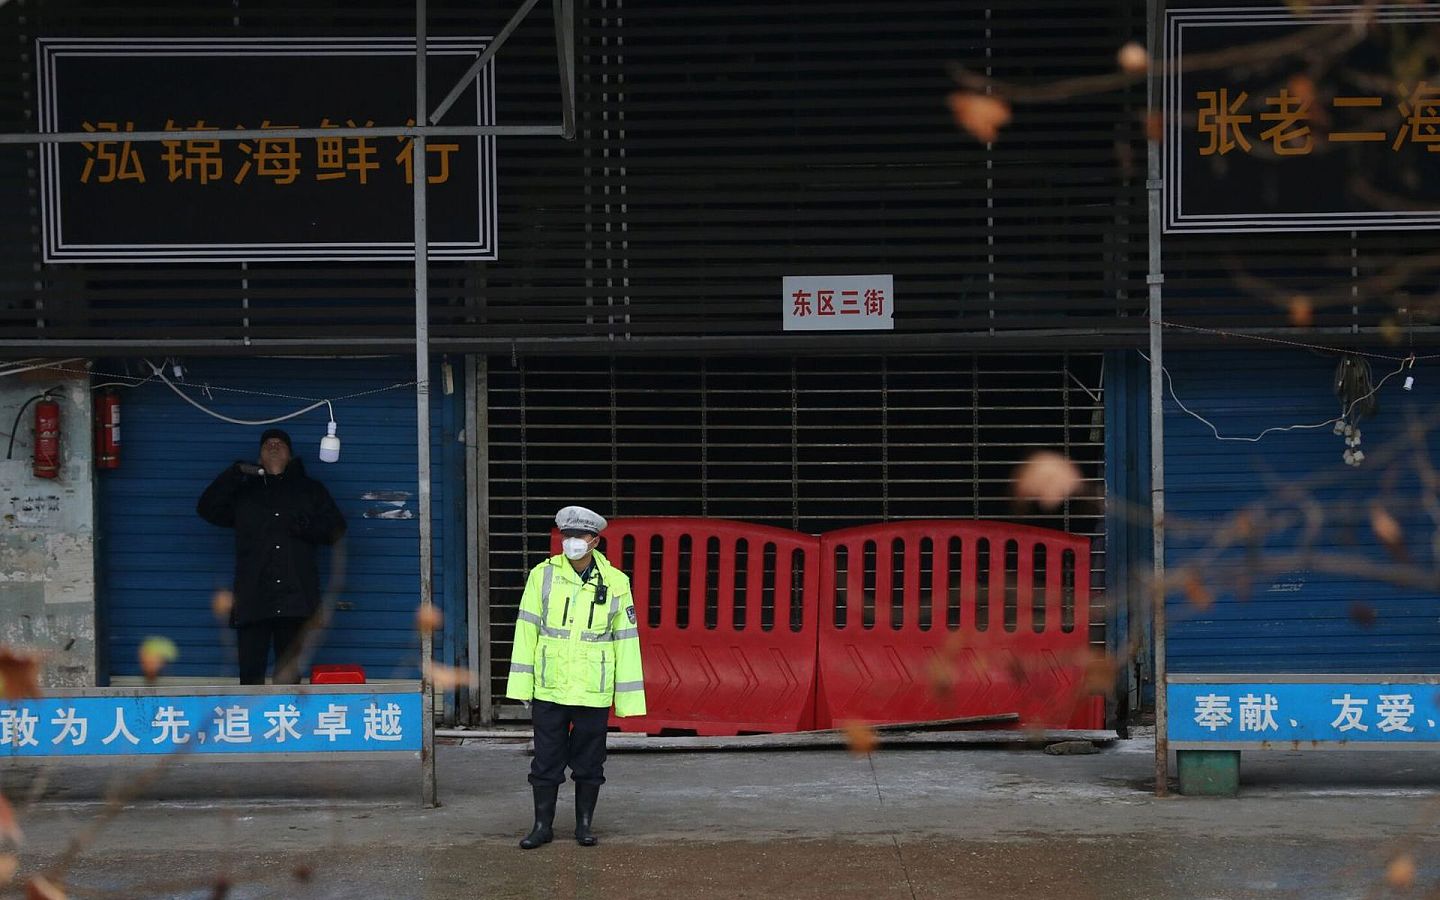 武汉华南海鲜市场一度被认为是新冠肺炎爆发的源头。图为一名戴着口罩的警察站在武汉封闭的海鲜市场前。（路透社）